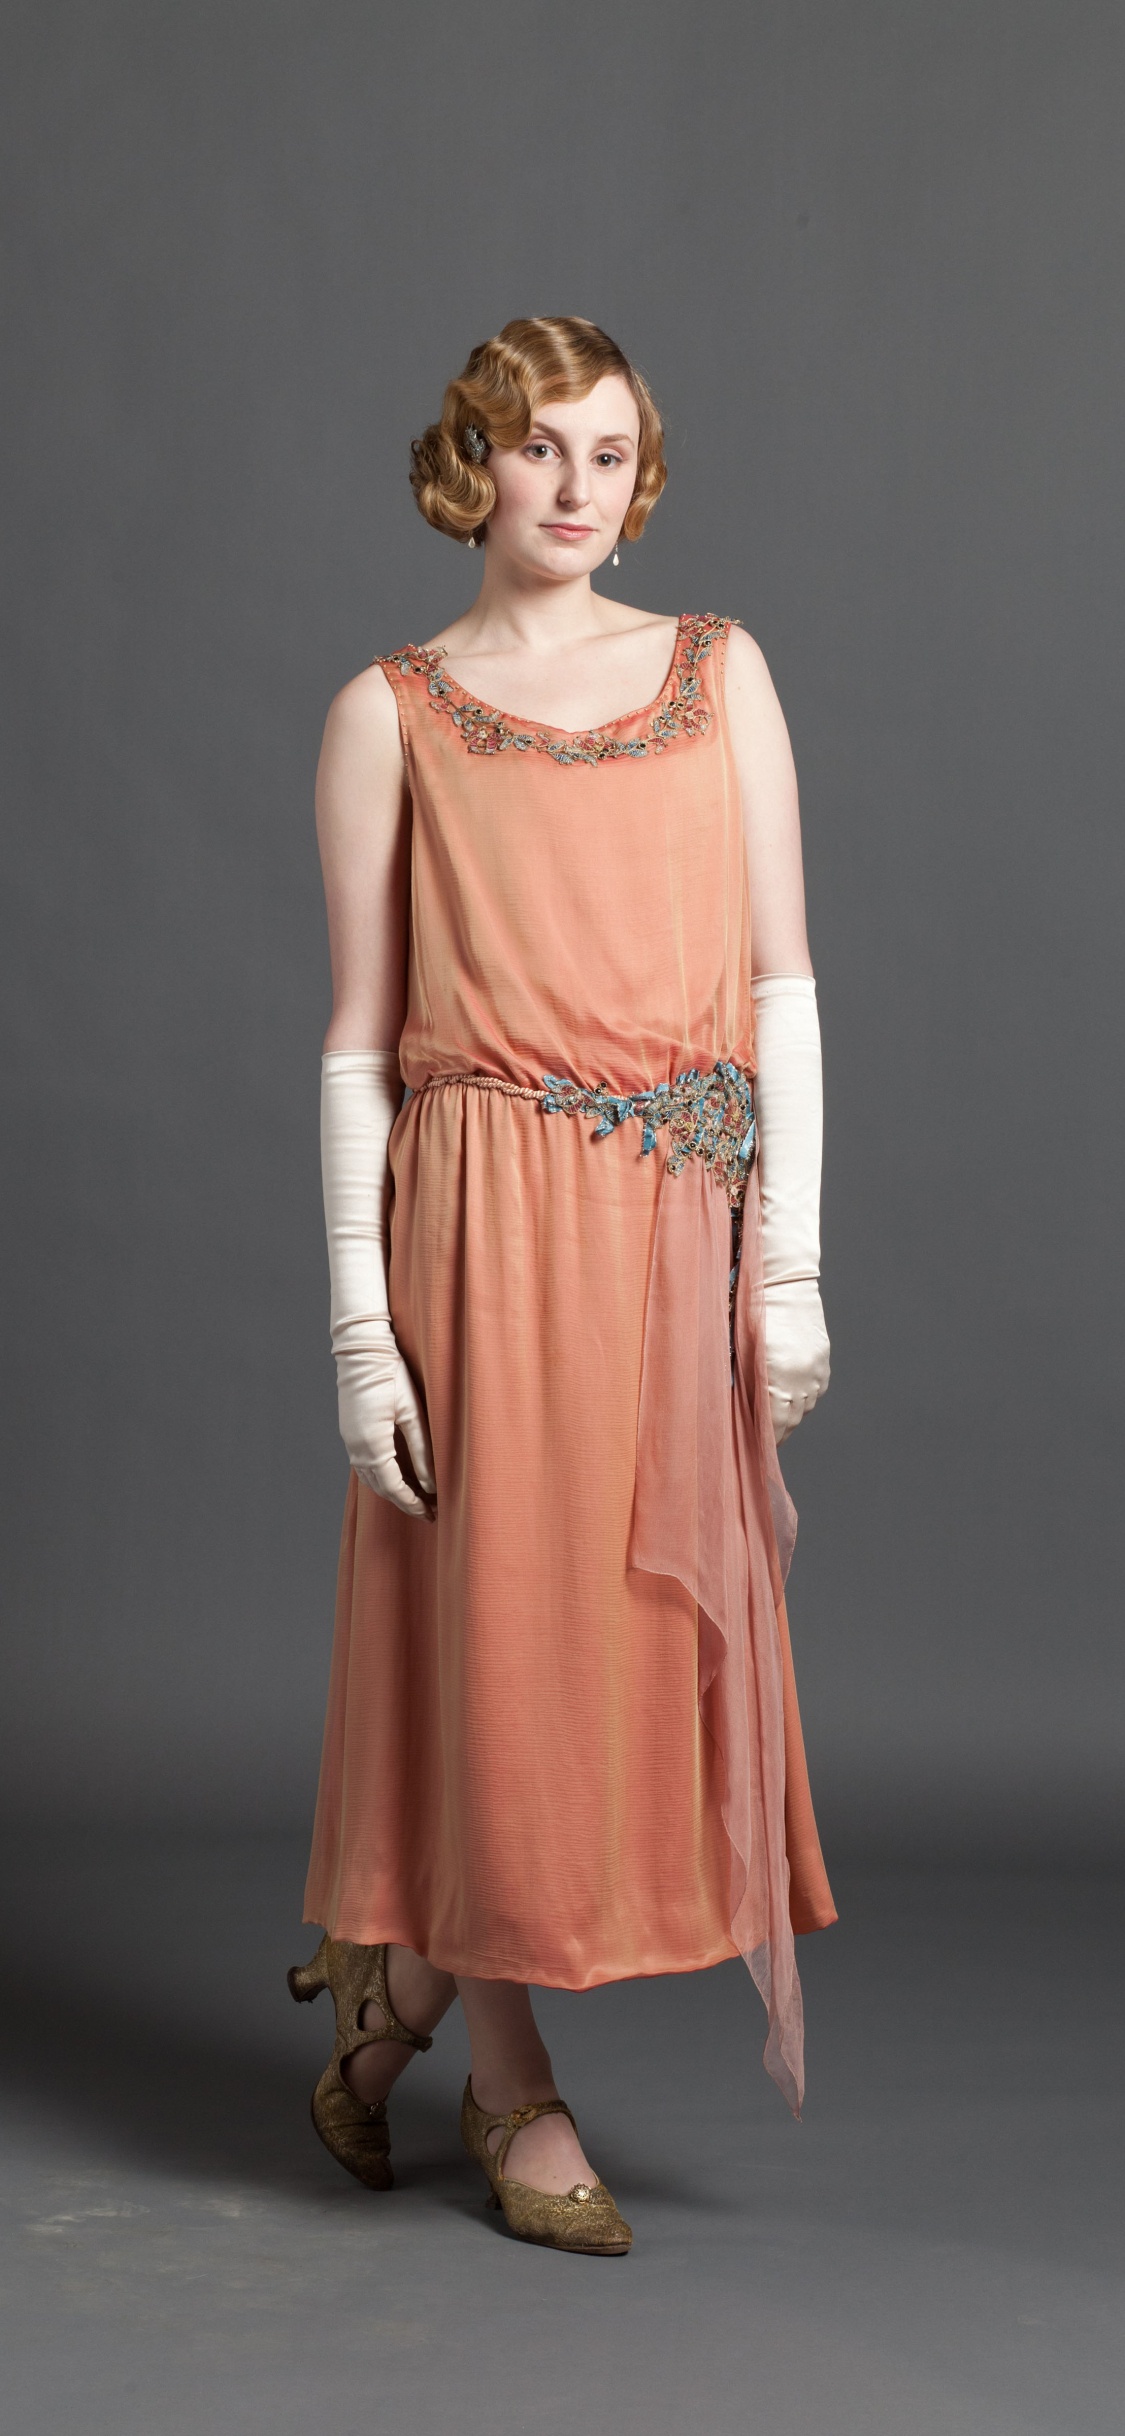 Laura Carmichael, Lady Edith Crawley, Downton Abbey, Dress, Clothing. Wallpaper in 1125x2436 Resolution